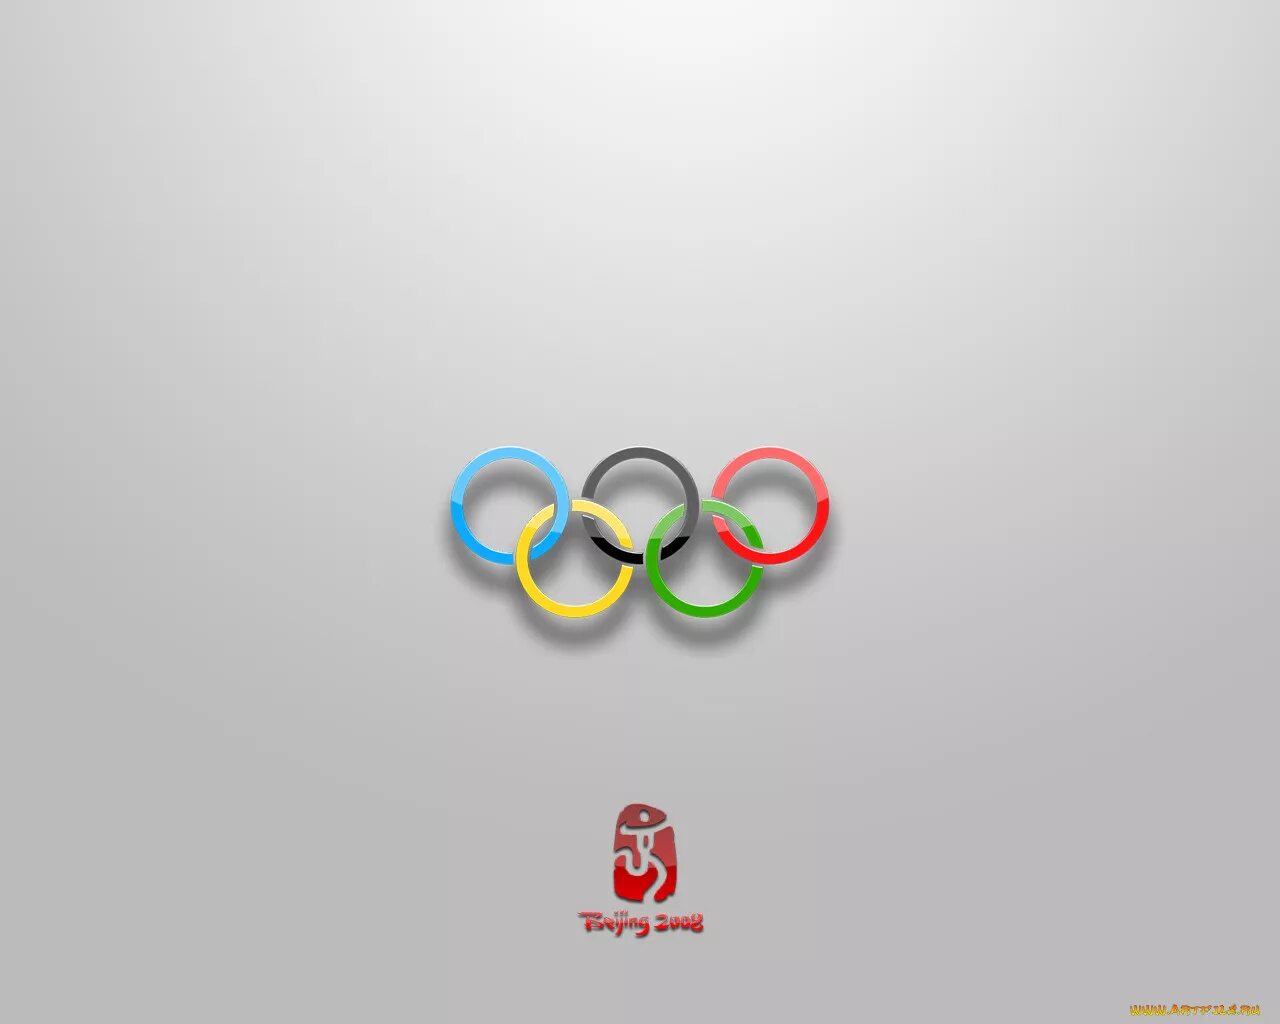 Эмблема спорт. Логотип абстракция. Спортивные эмблемы на обои. Абстрактный логотип спорт. Метка спорт